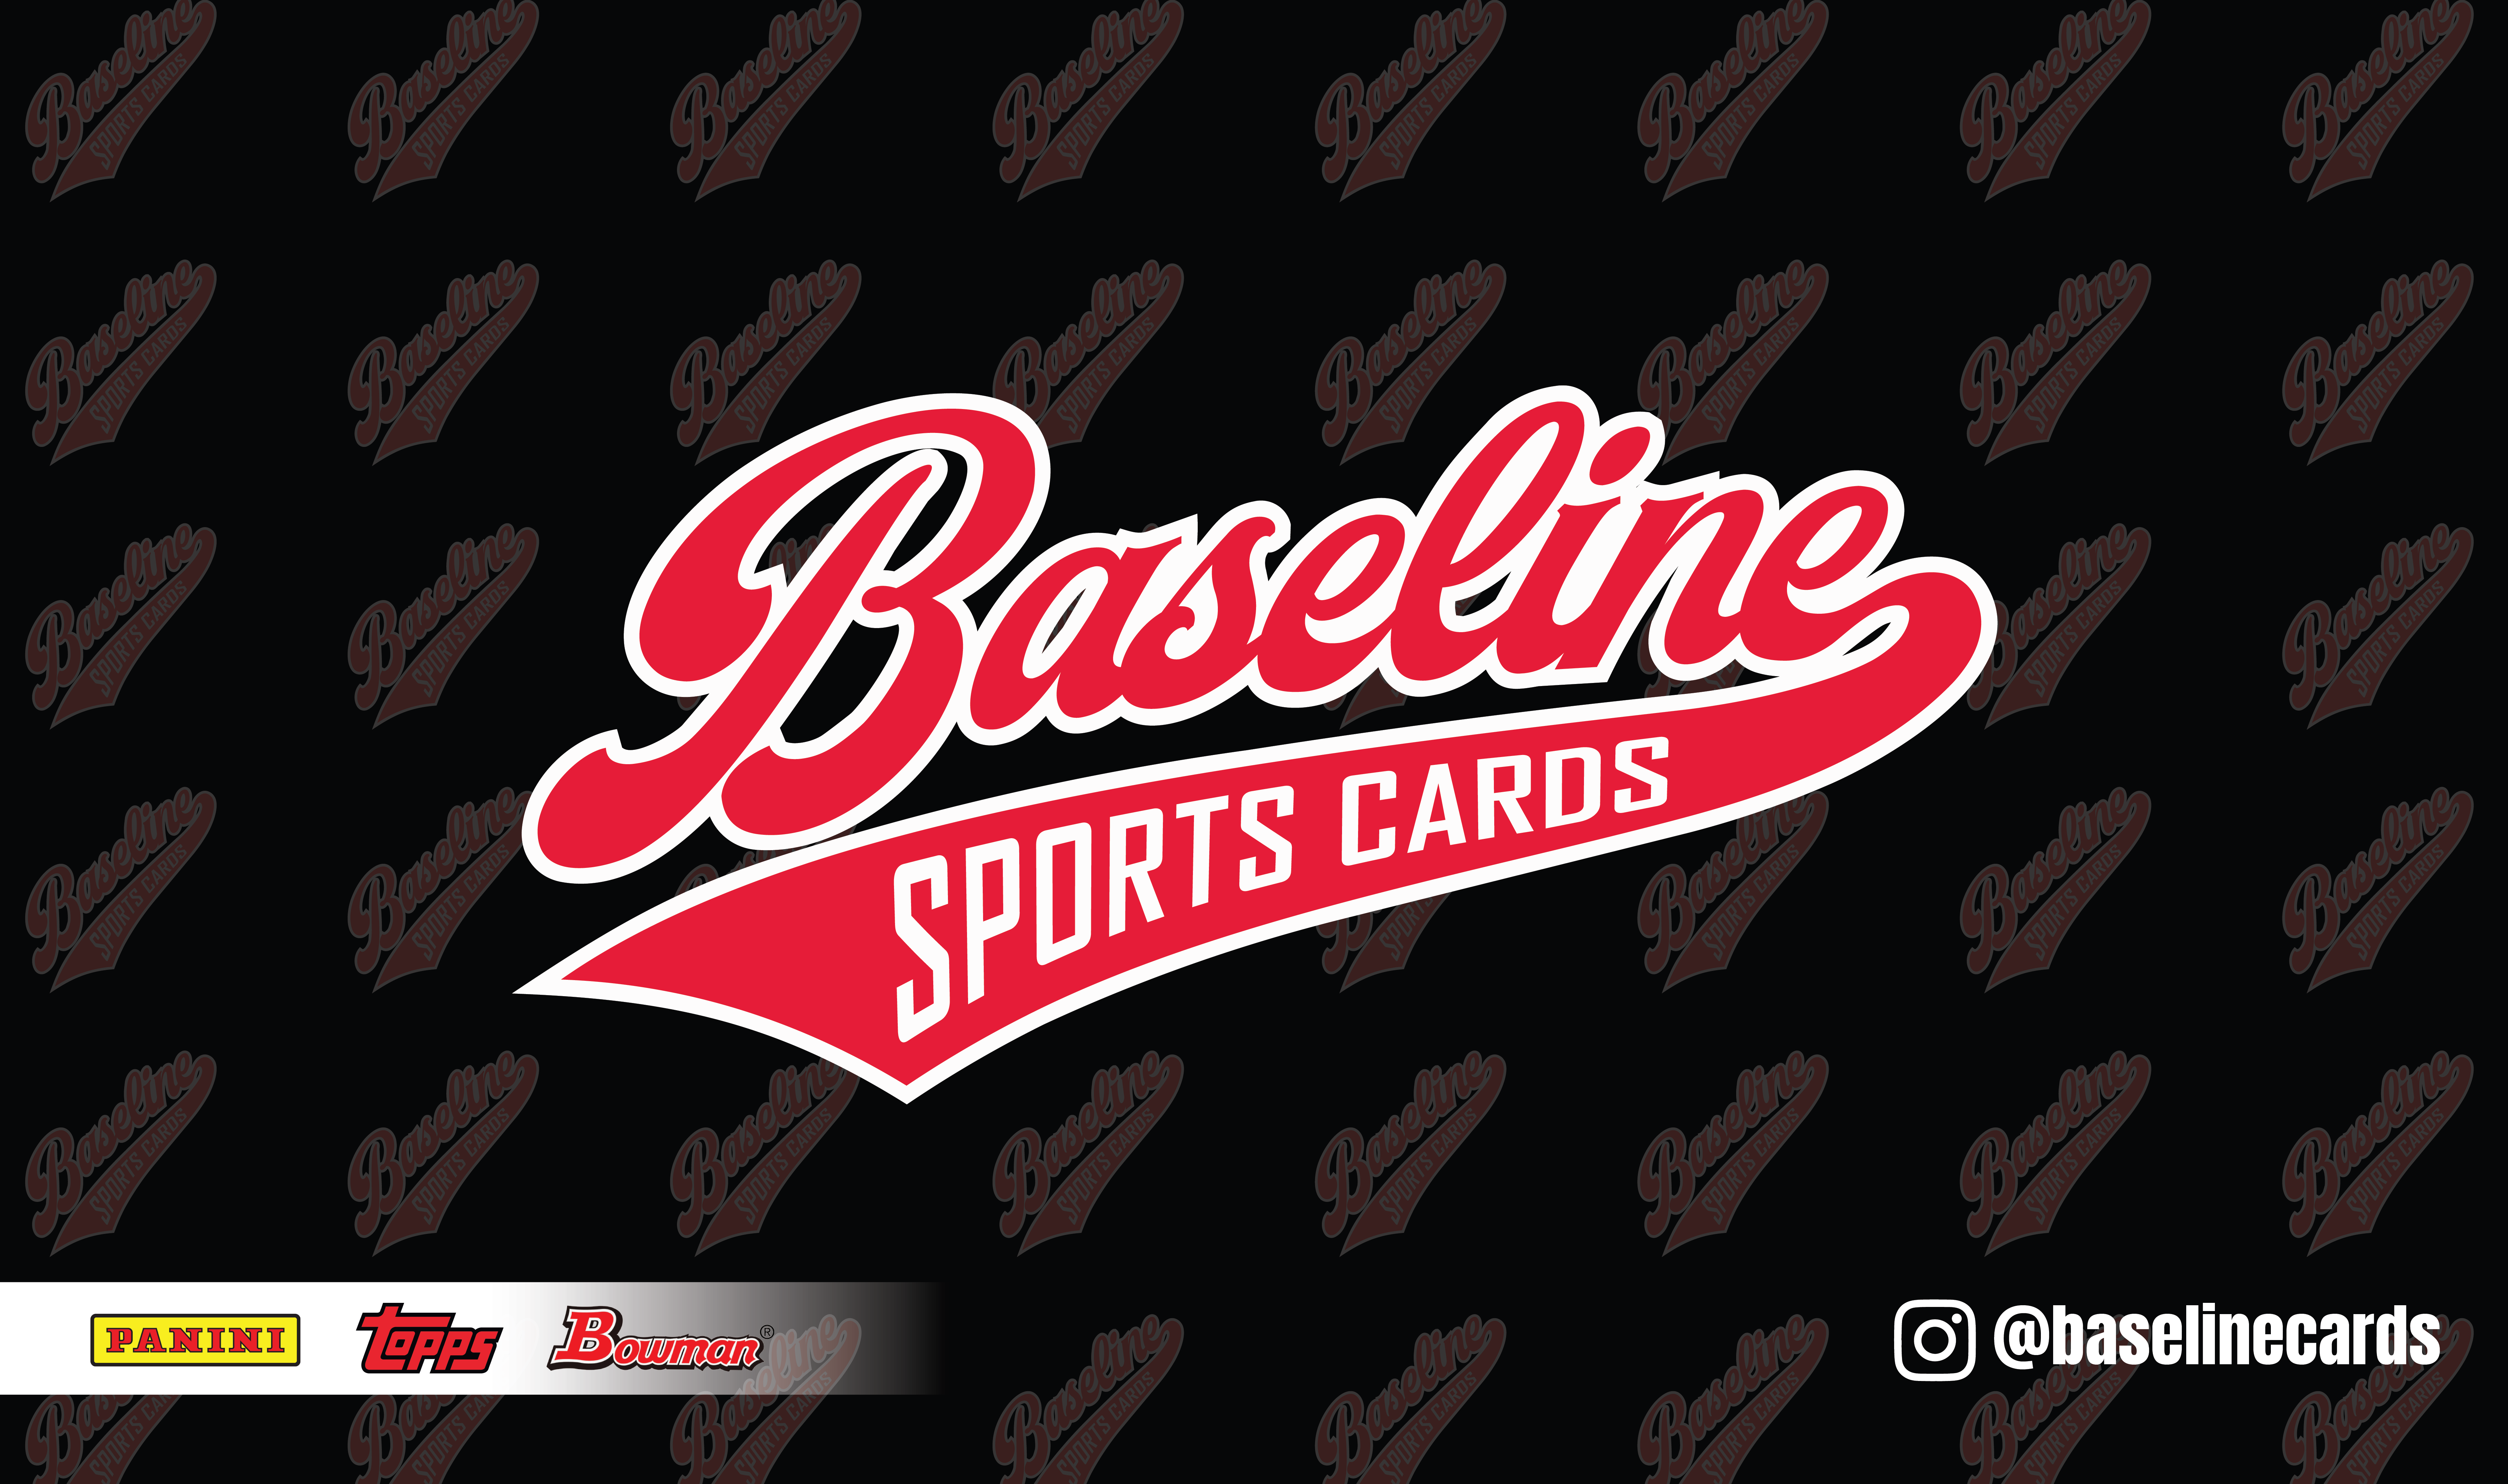 Baseline Sports Cards